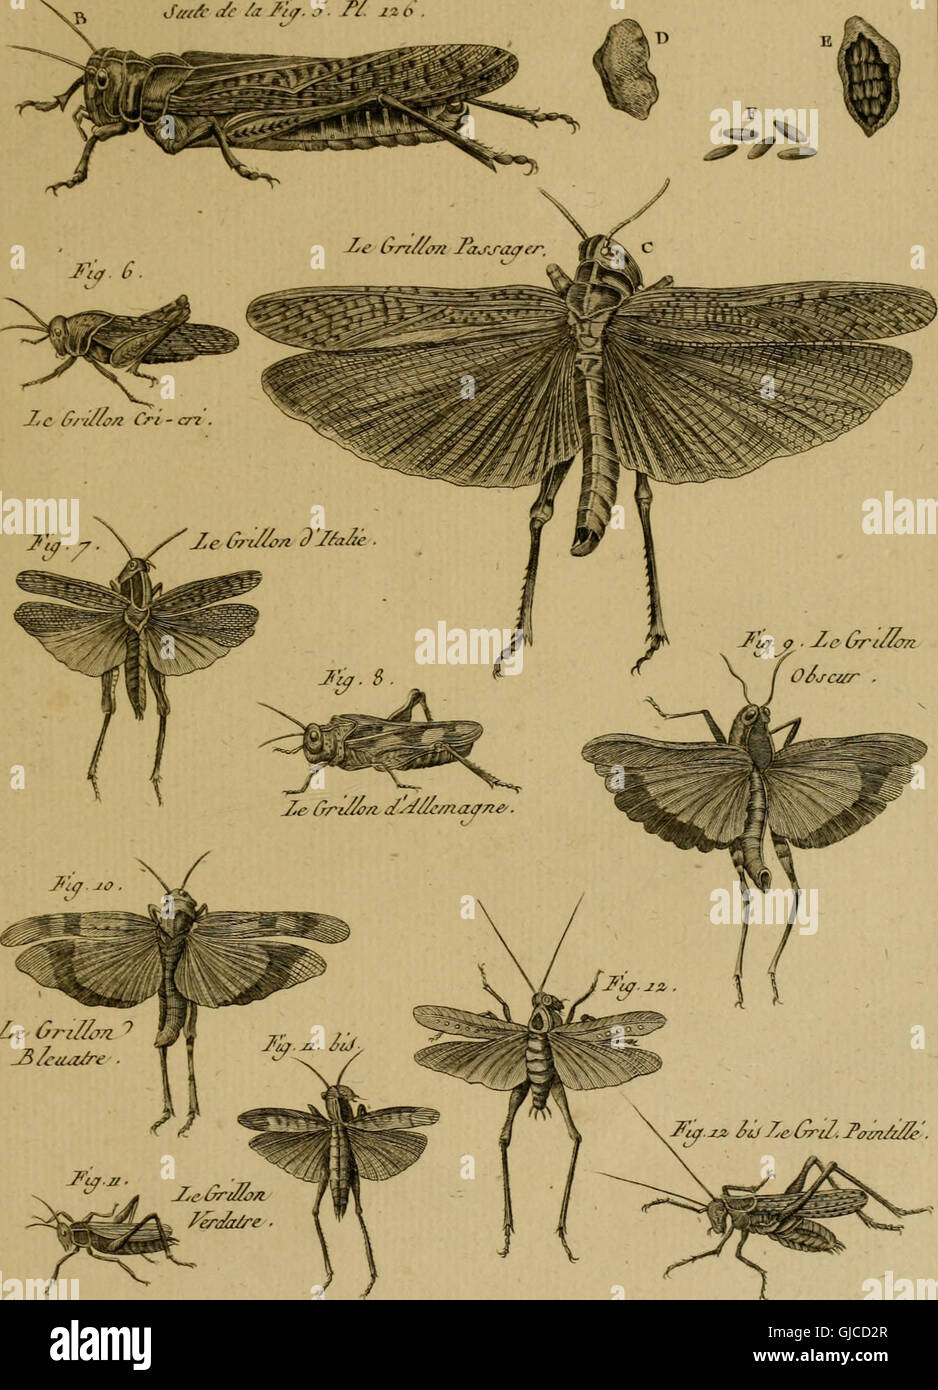 Encyclopédie méthodique - Histoire naturelle (1789) Stock Photo